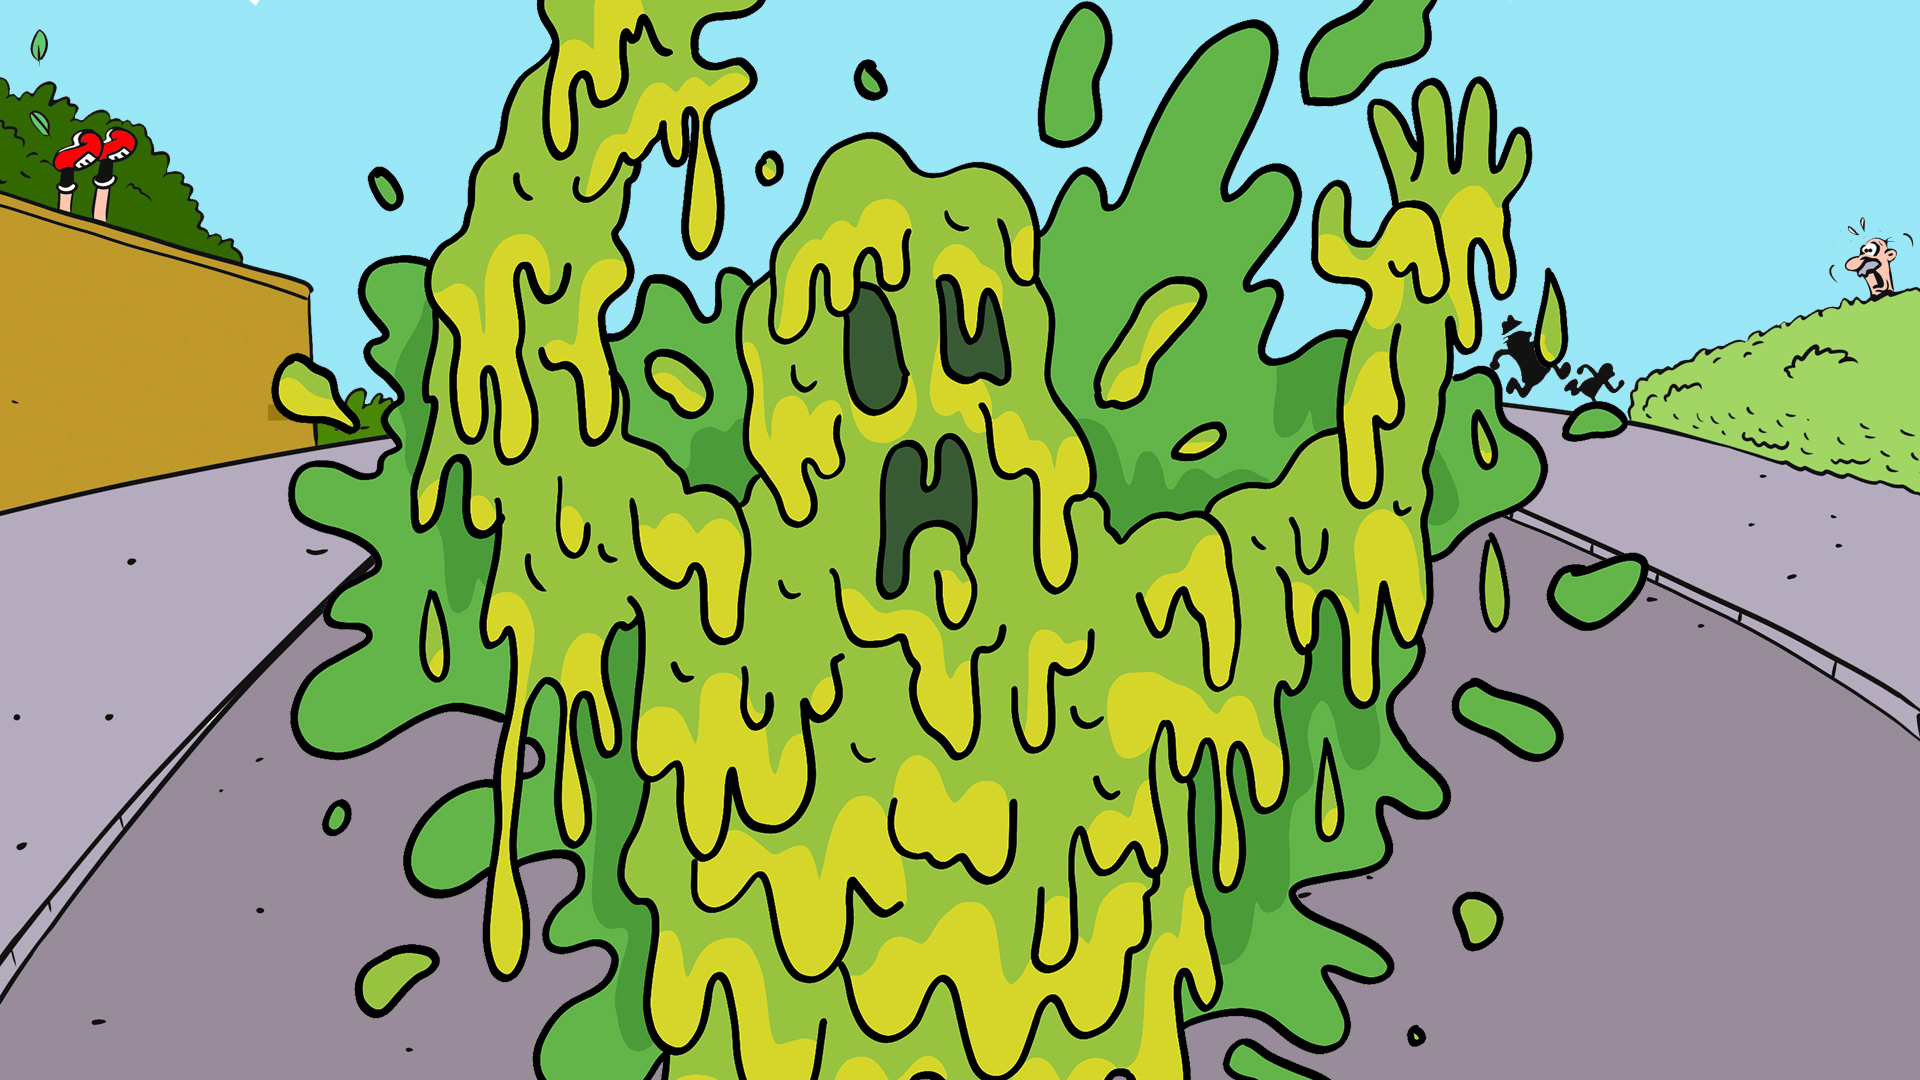 Slime Monster roaming the streets of Beanotown